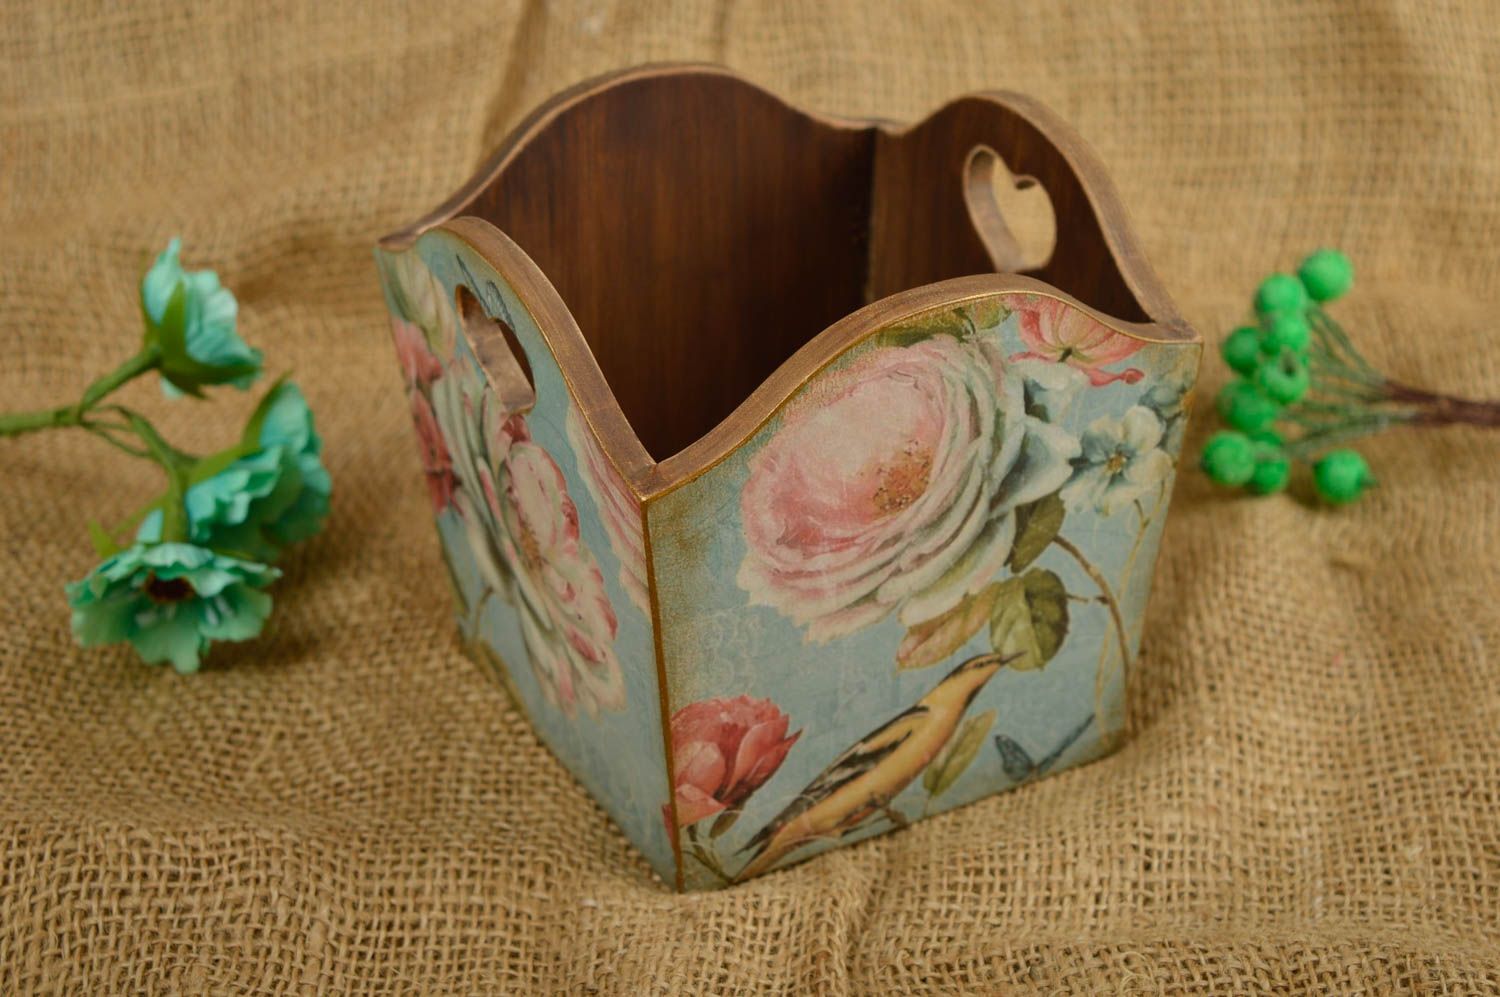 Handmade stylish napkin holder made of wood decoupage box kitchen decor ideas photo 1